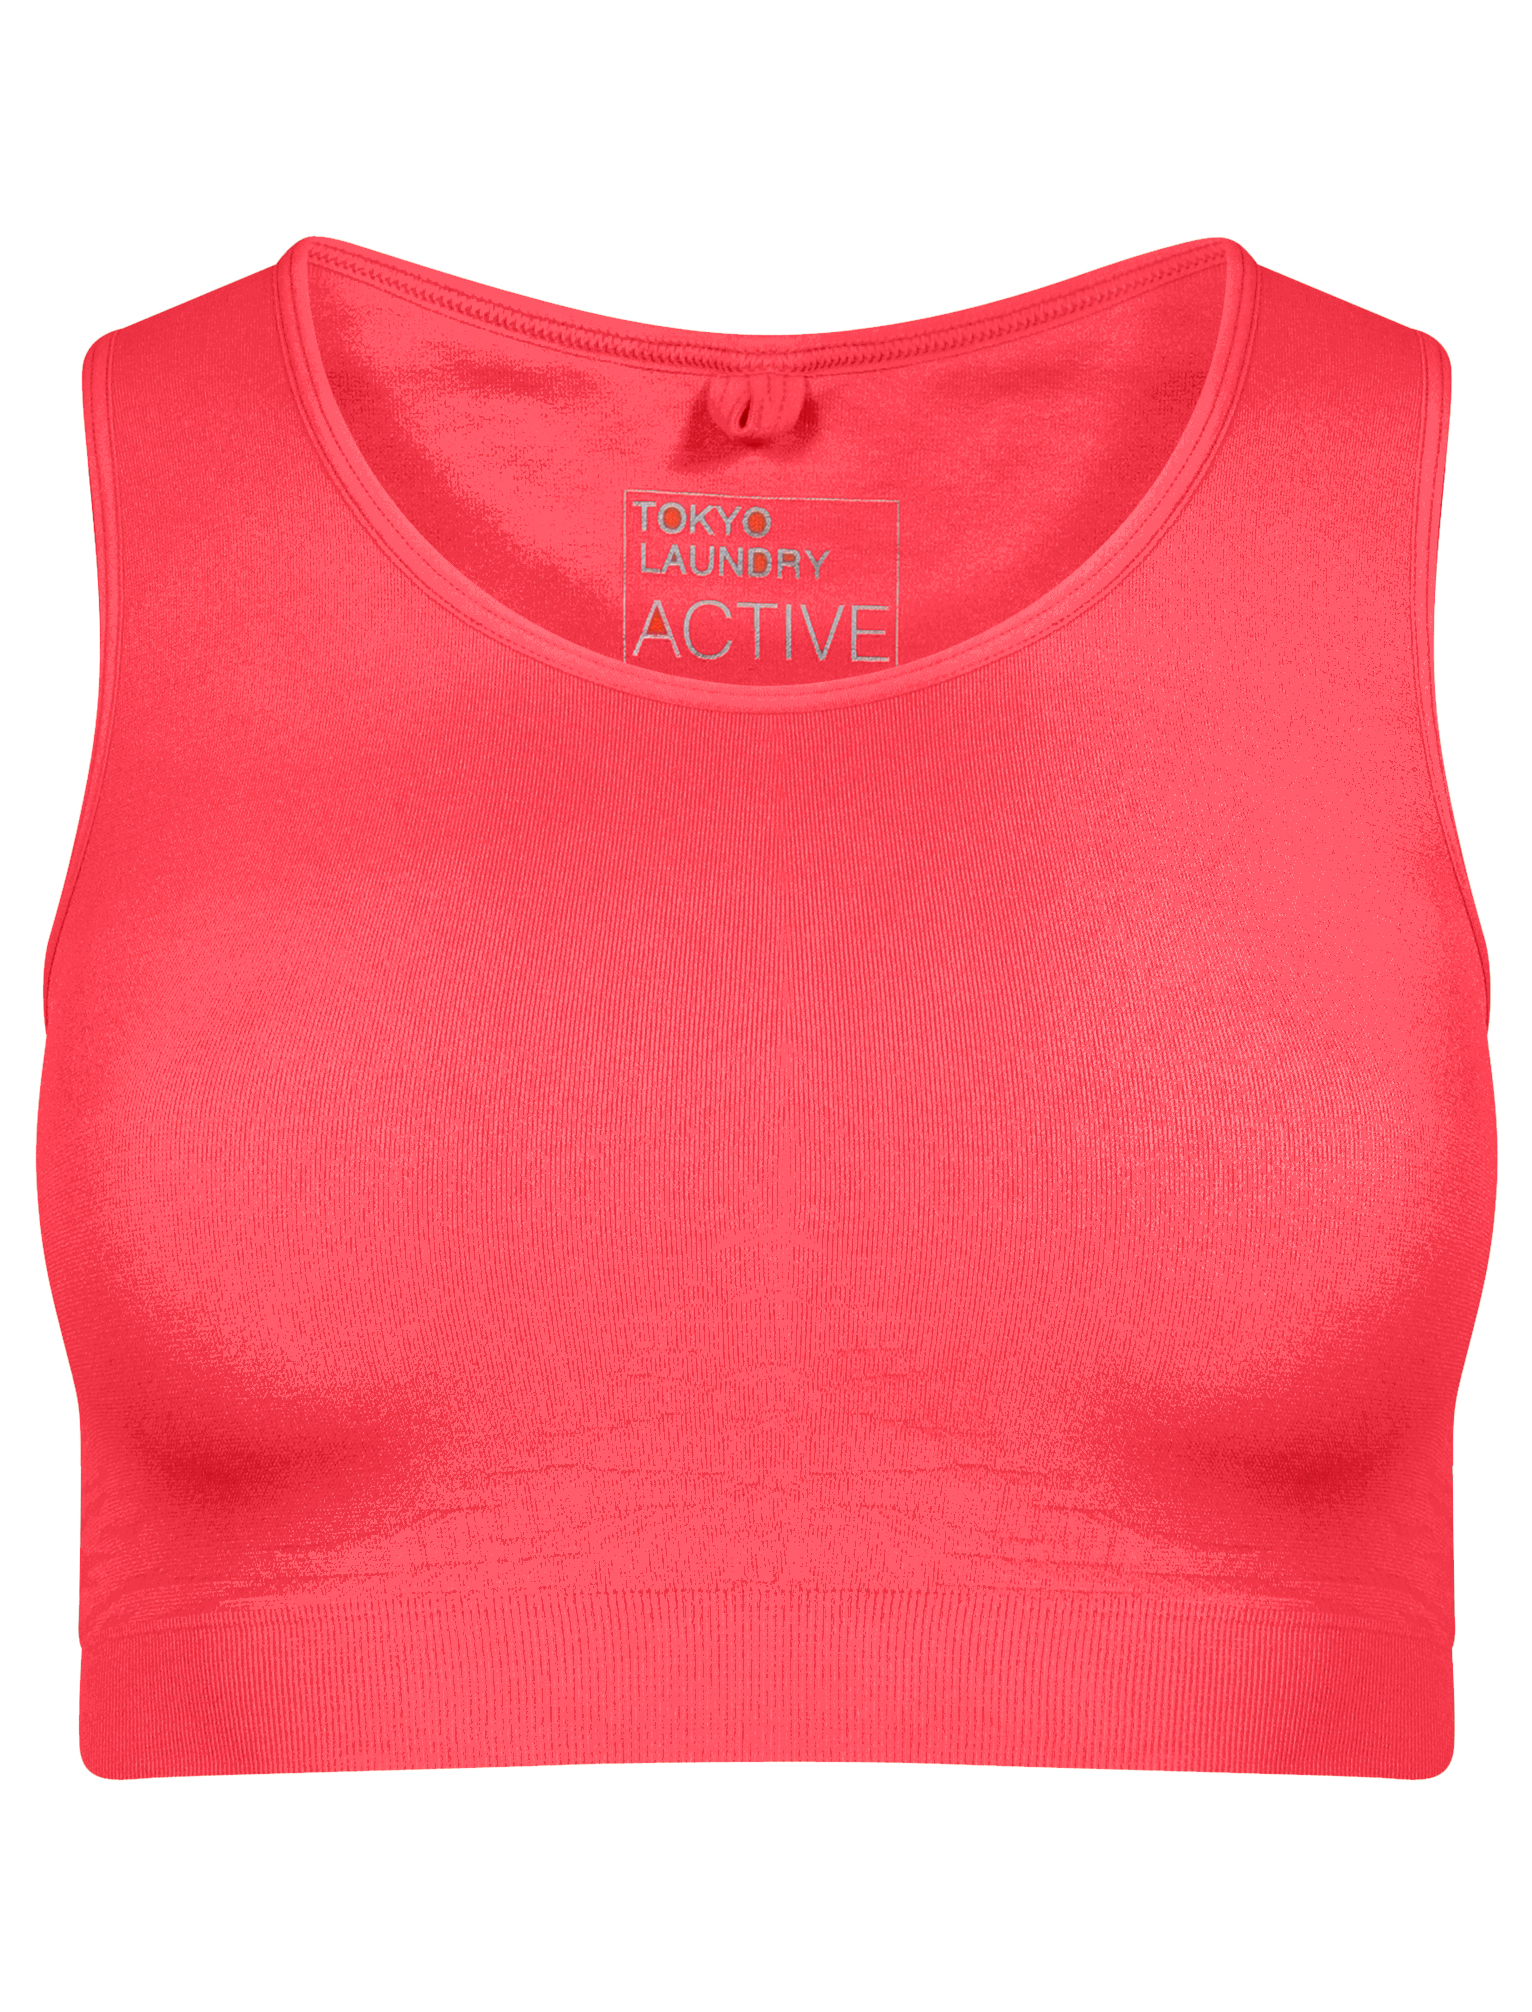 Nueva camiseta para mujer Tokyo Laundry Beretta Cebra Recortado Prenda para el torso Sports Gym Joga Sujetador Talla 8-16